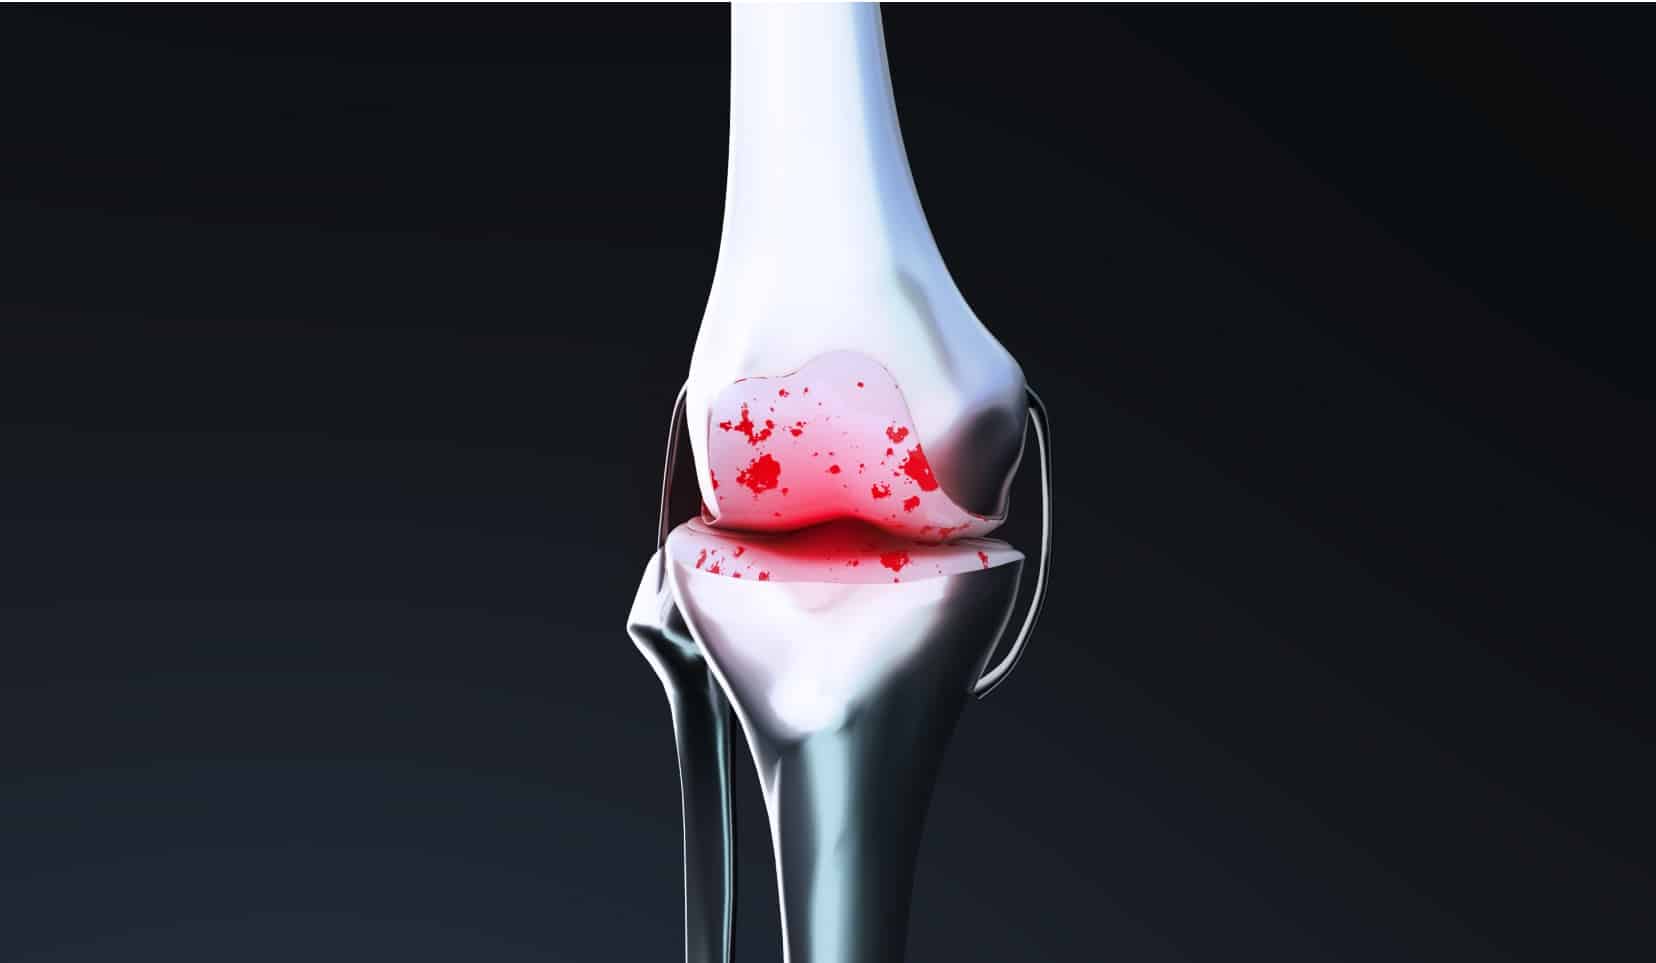 Complications liées aux prothèses de genou | operation prothese genoux | Dr Polle | Bois-Guillaume